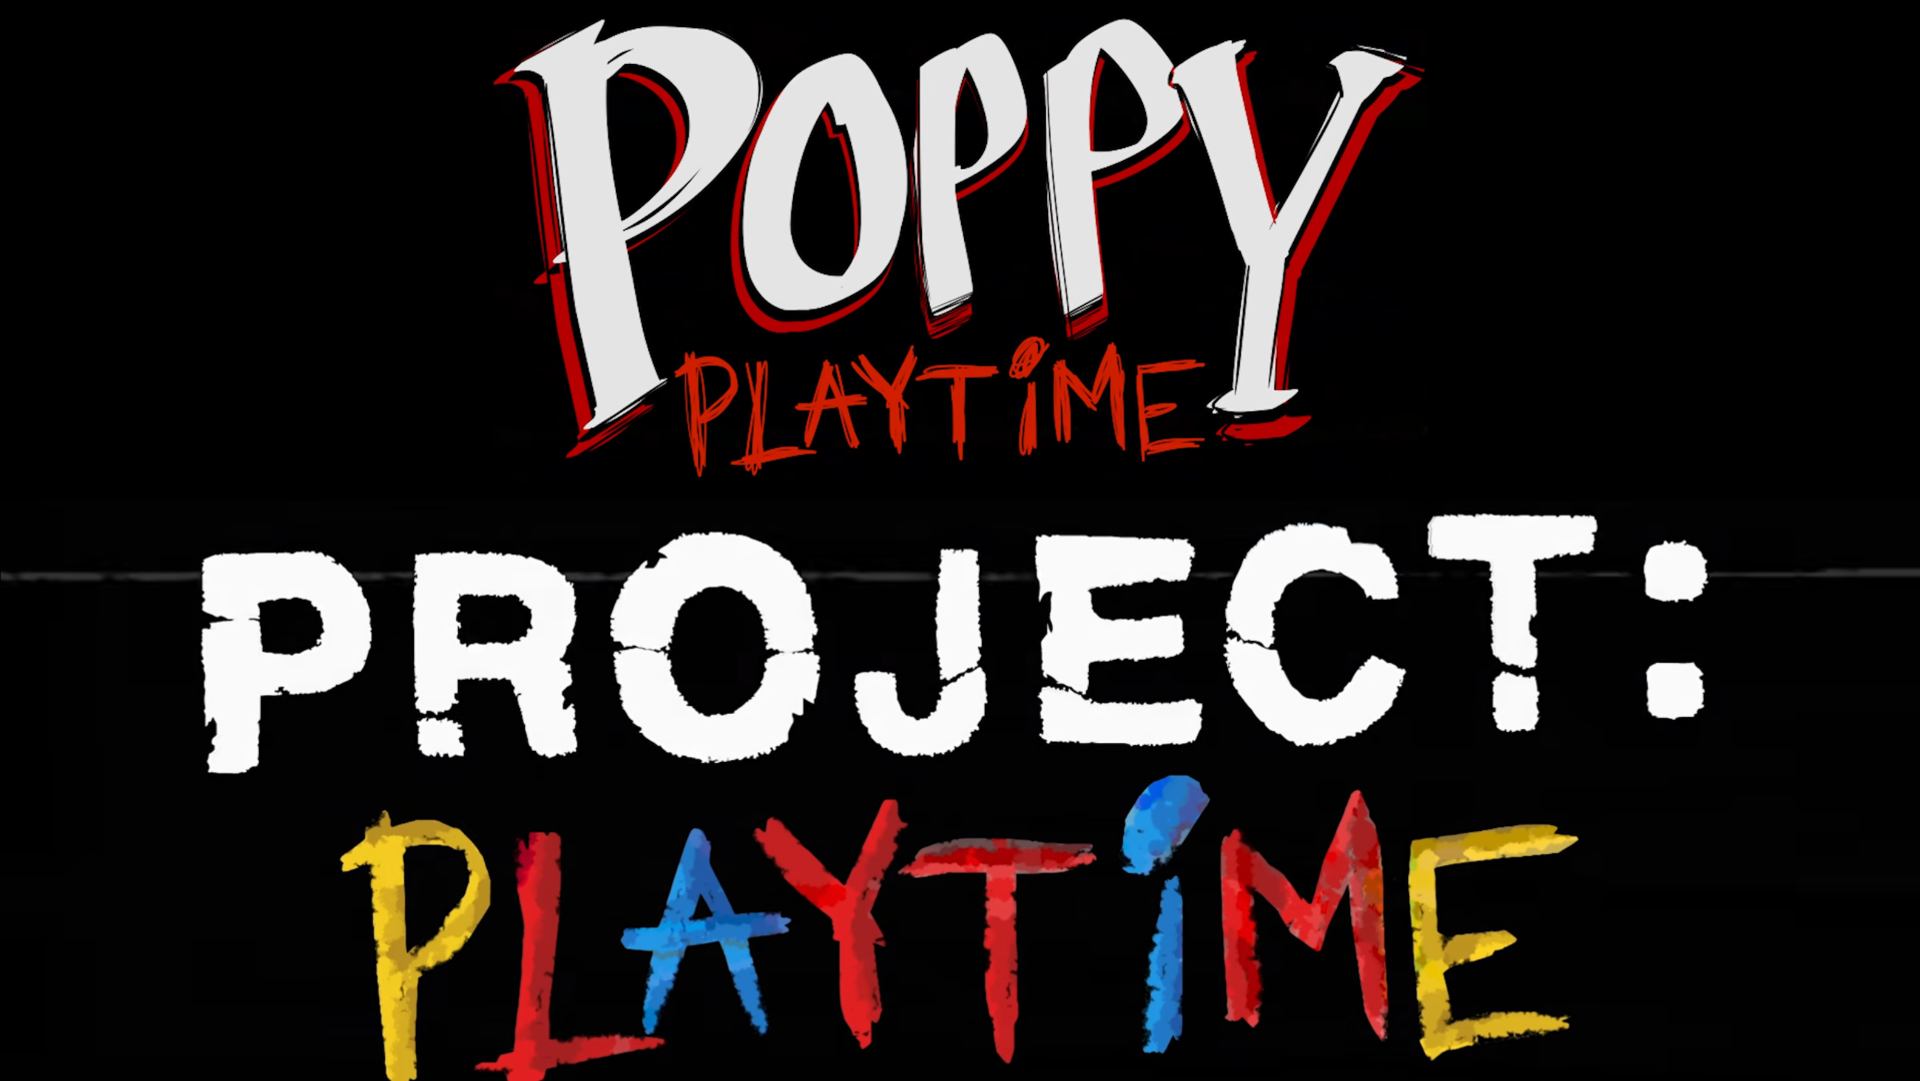 Логотип playtime. Проджект Playtime. Игра Проджект плей тайм. Проджект Poppy Playtime. Poppy Playtime игра Project.